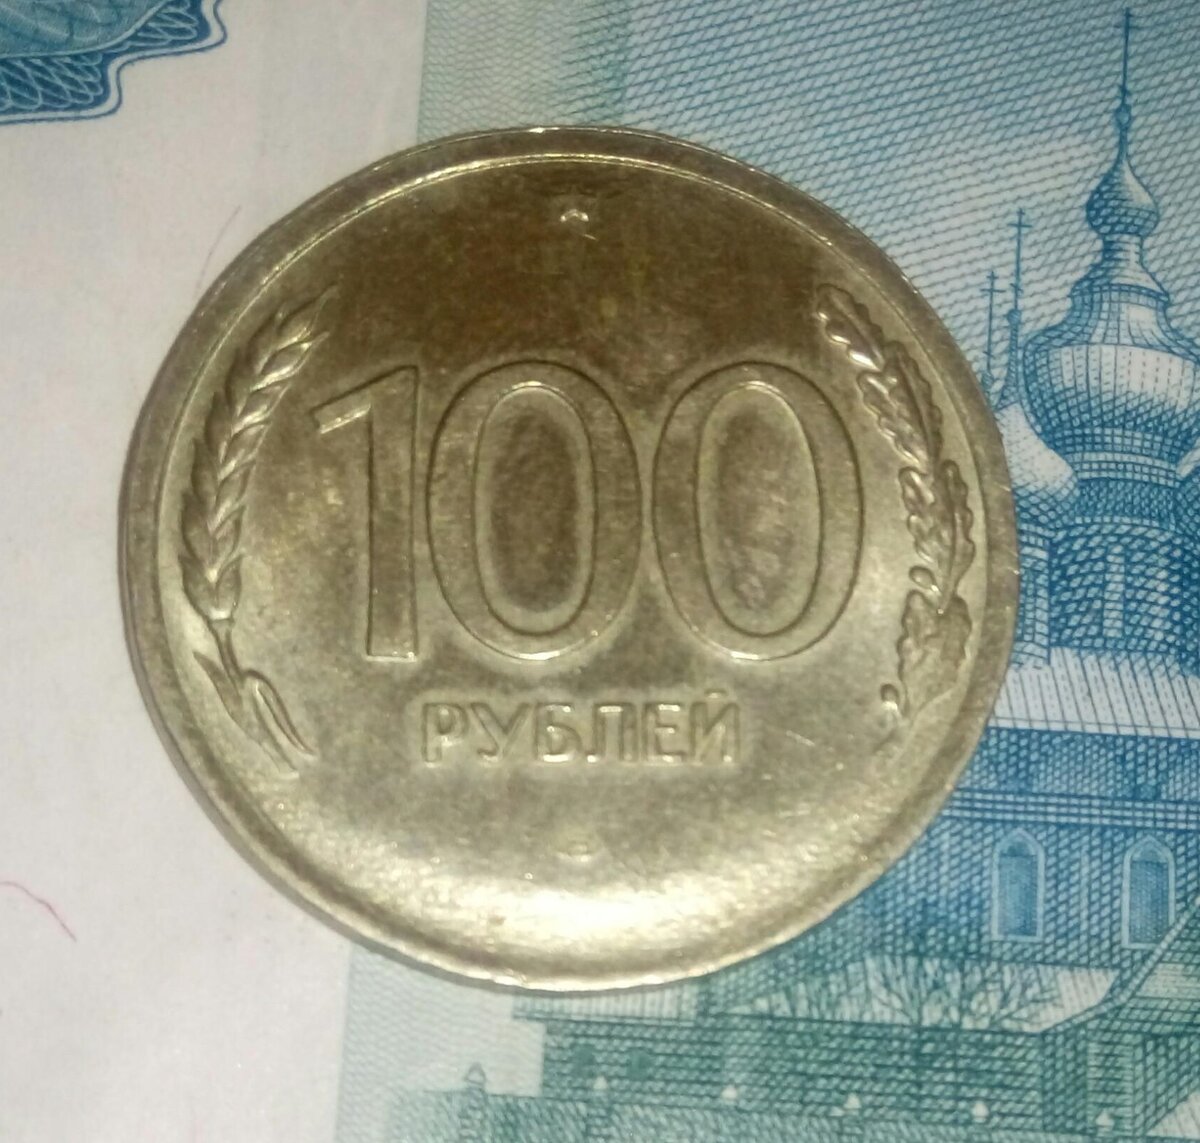 80 рублей 90. 100 Р 93 Г марки. Фото 100 руб Железный девяносто третий год. Недорогостоящий.